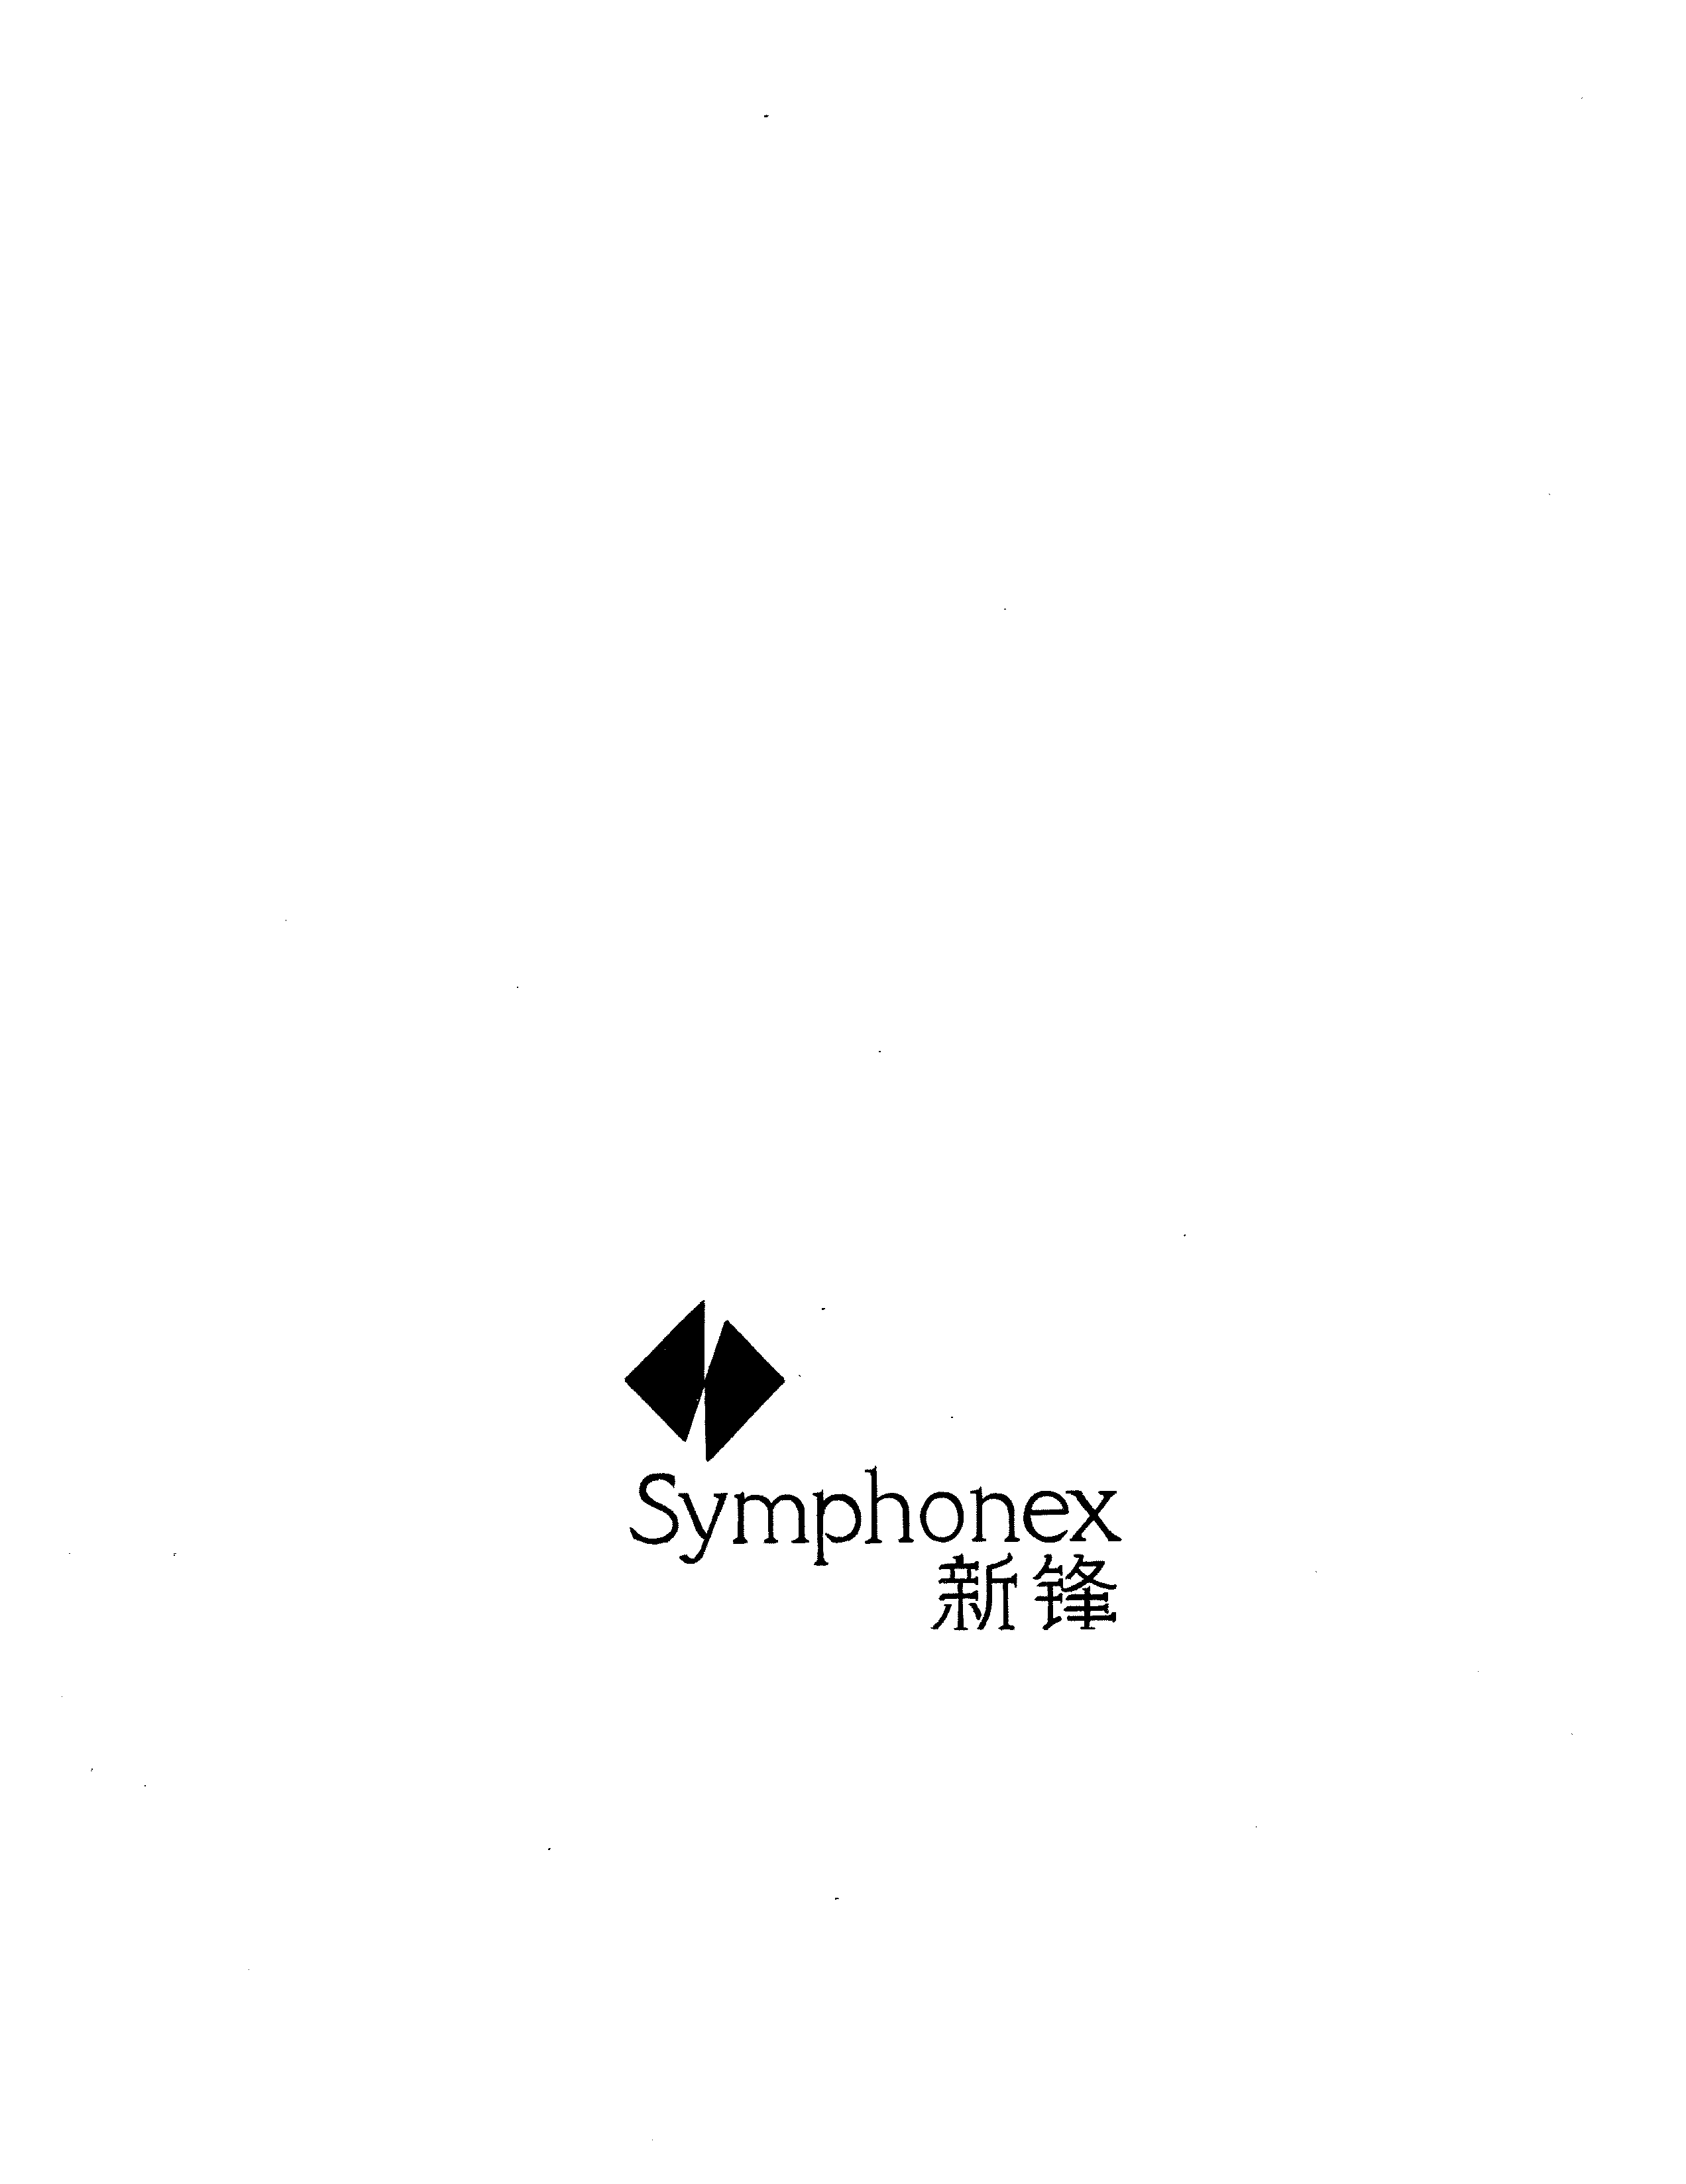  SYMPHONEX